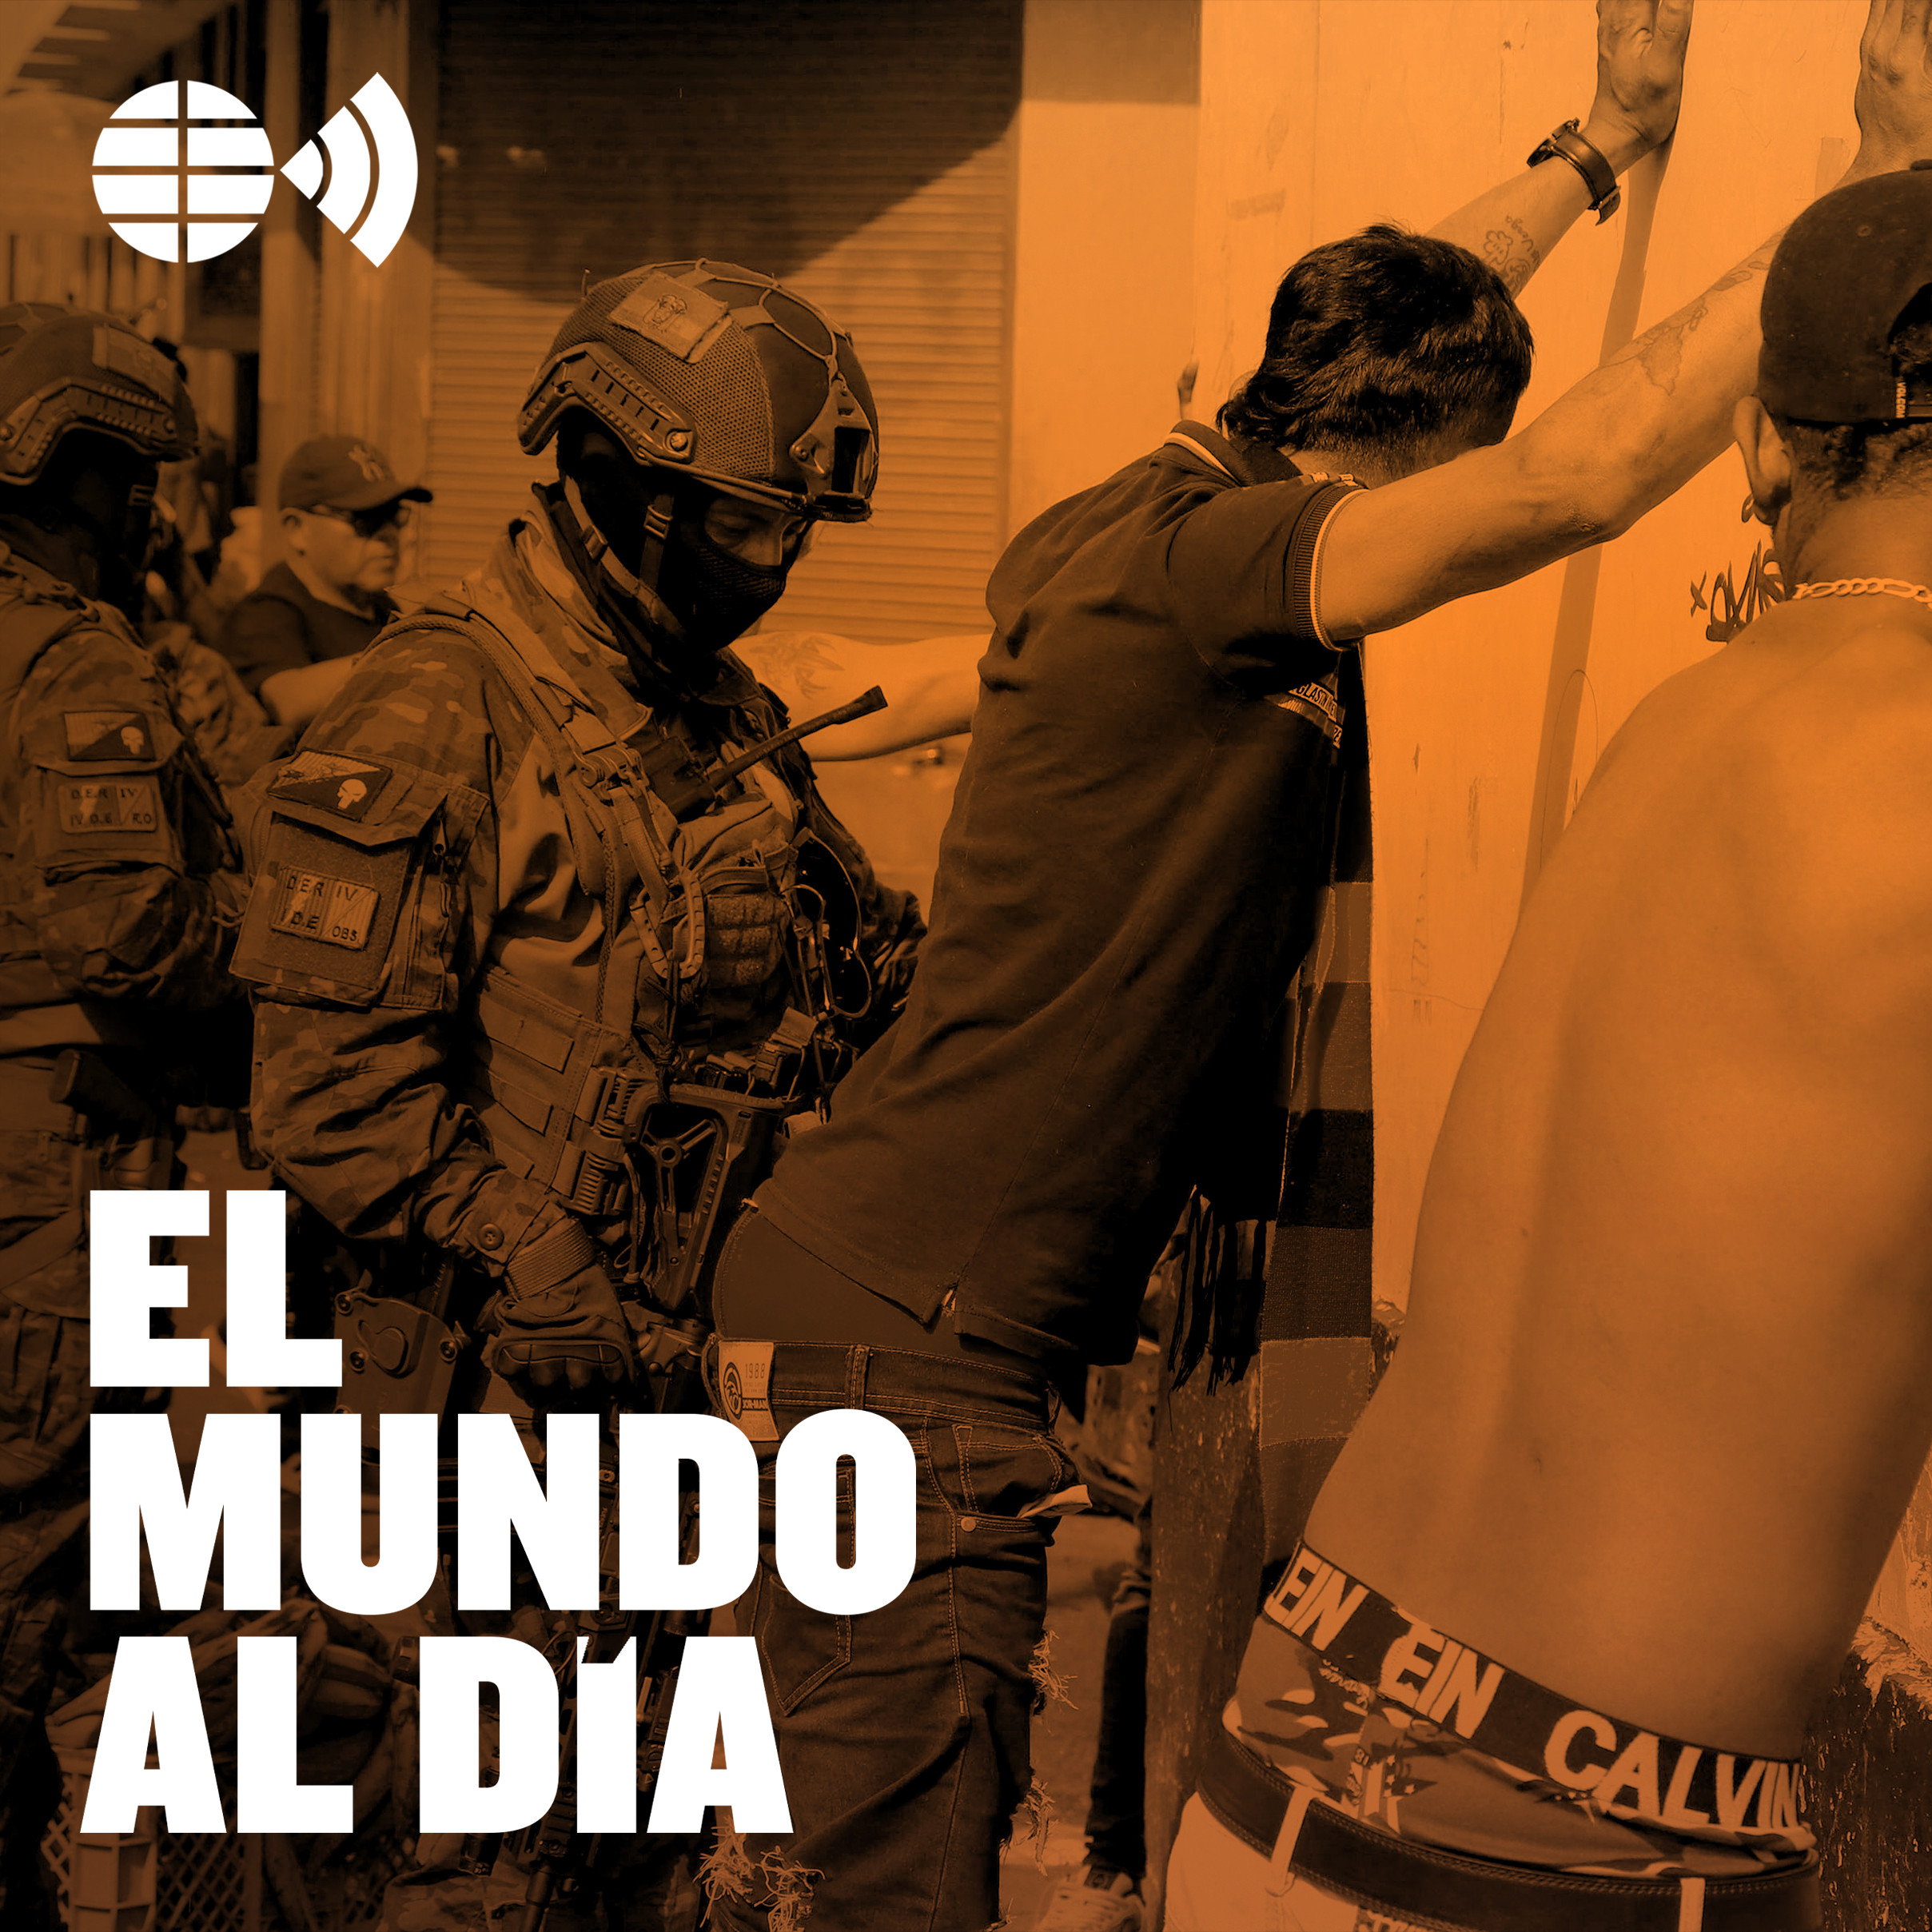 ¿Qué está pasando en Ecuador? Claves de la guerra total contra el narco